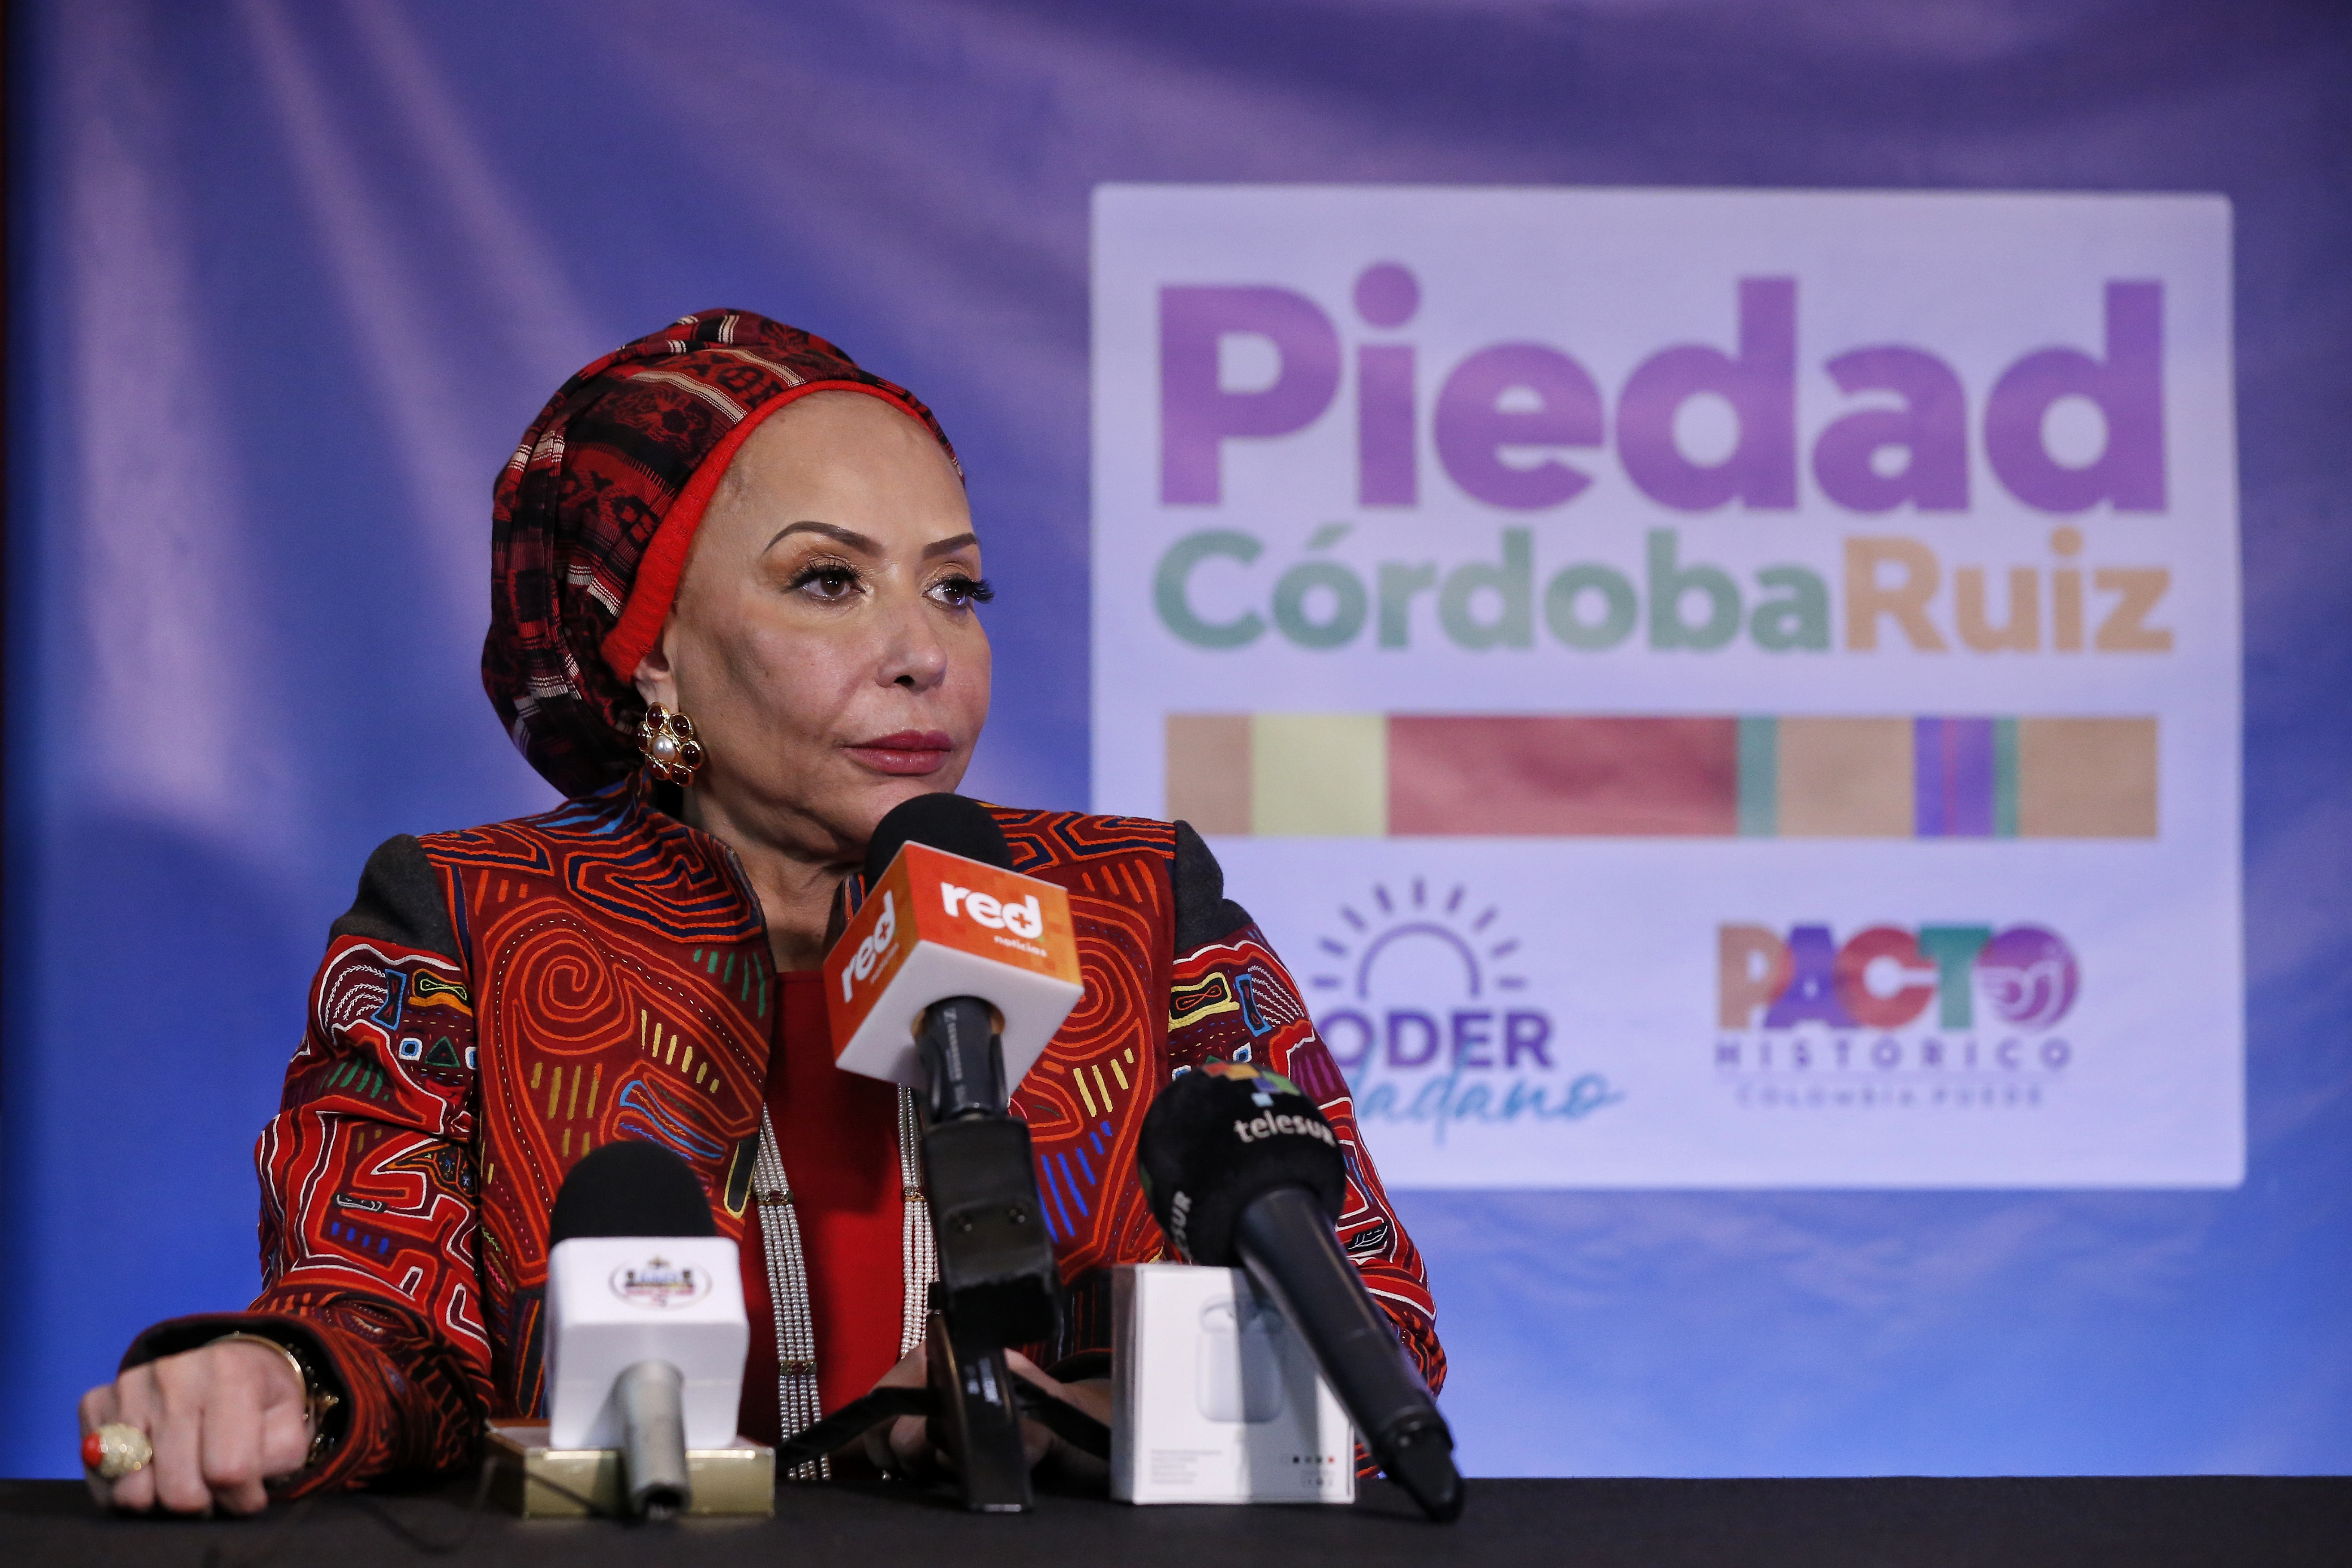 “Tengo cercanía y siempre la he tenido con la paz”: Piedad Córdoba habla sobre su supuesta relación con las extintas Farc